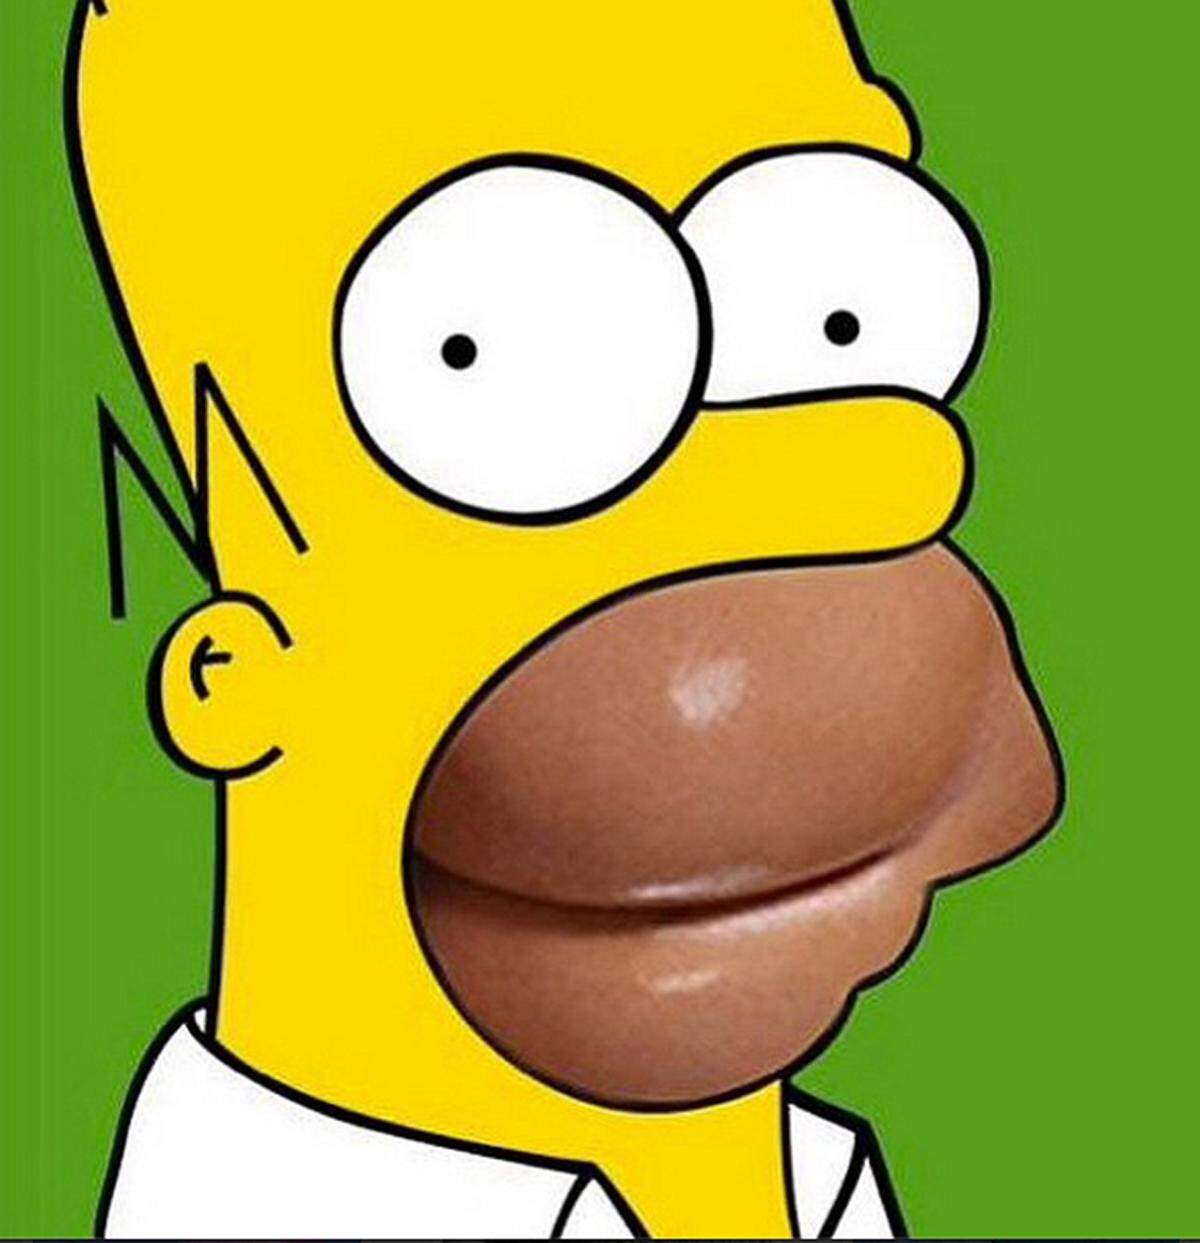 Zu Homer Simpsons Bart und Mund wurde die Rückseite von Kim Kardashian bei dem Magazin "Blast".